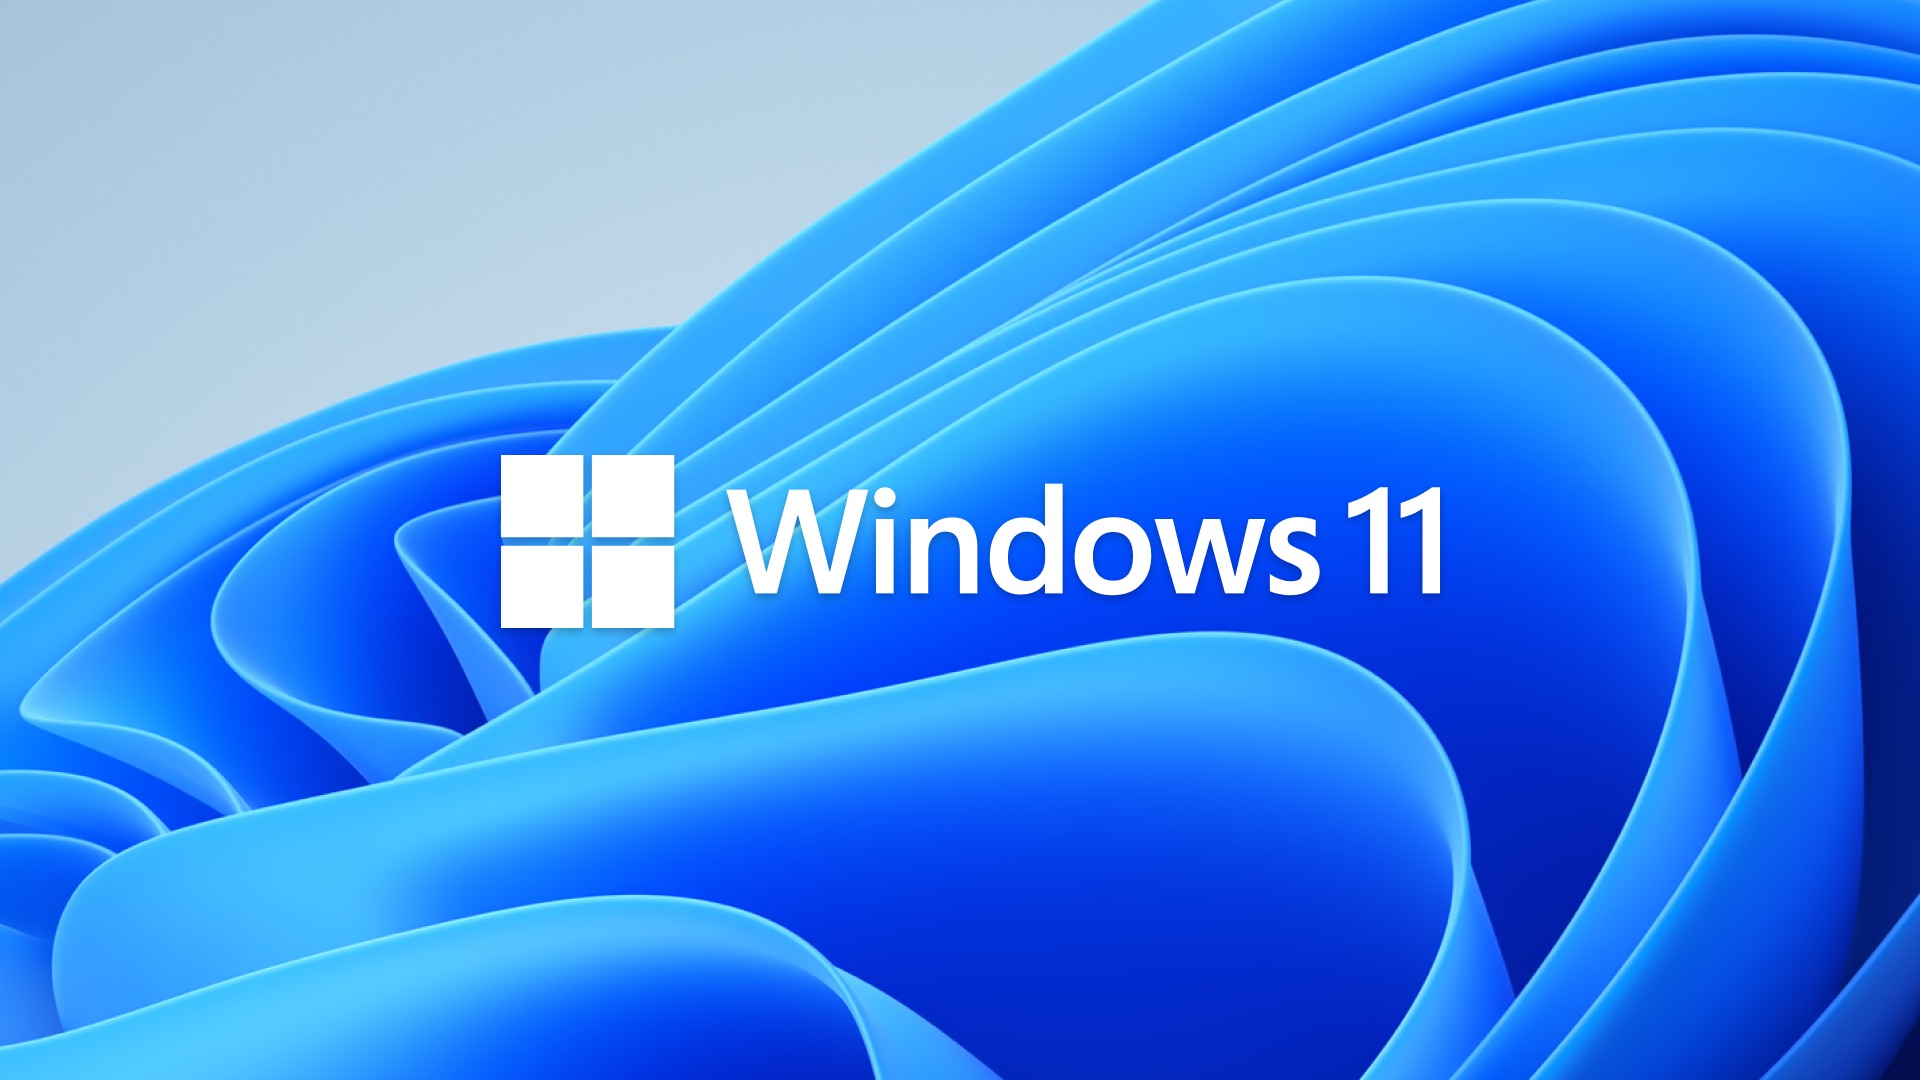 อยากอัป Windows 11 ก่อนใครเขา ทำอย่างไรดี??